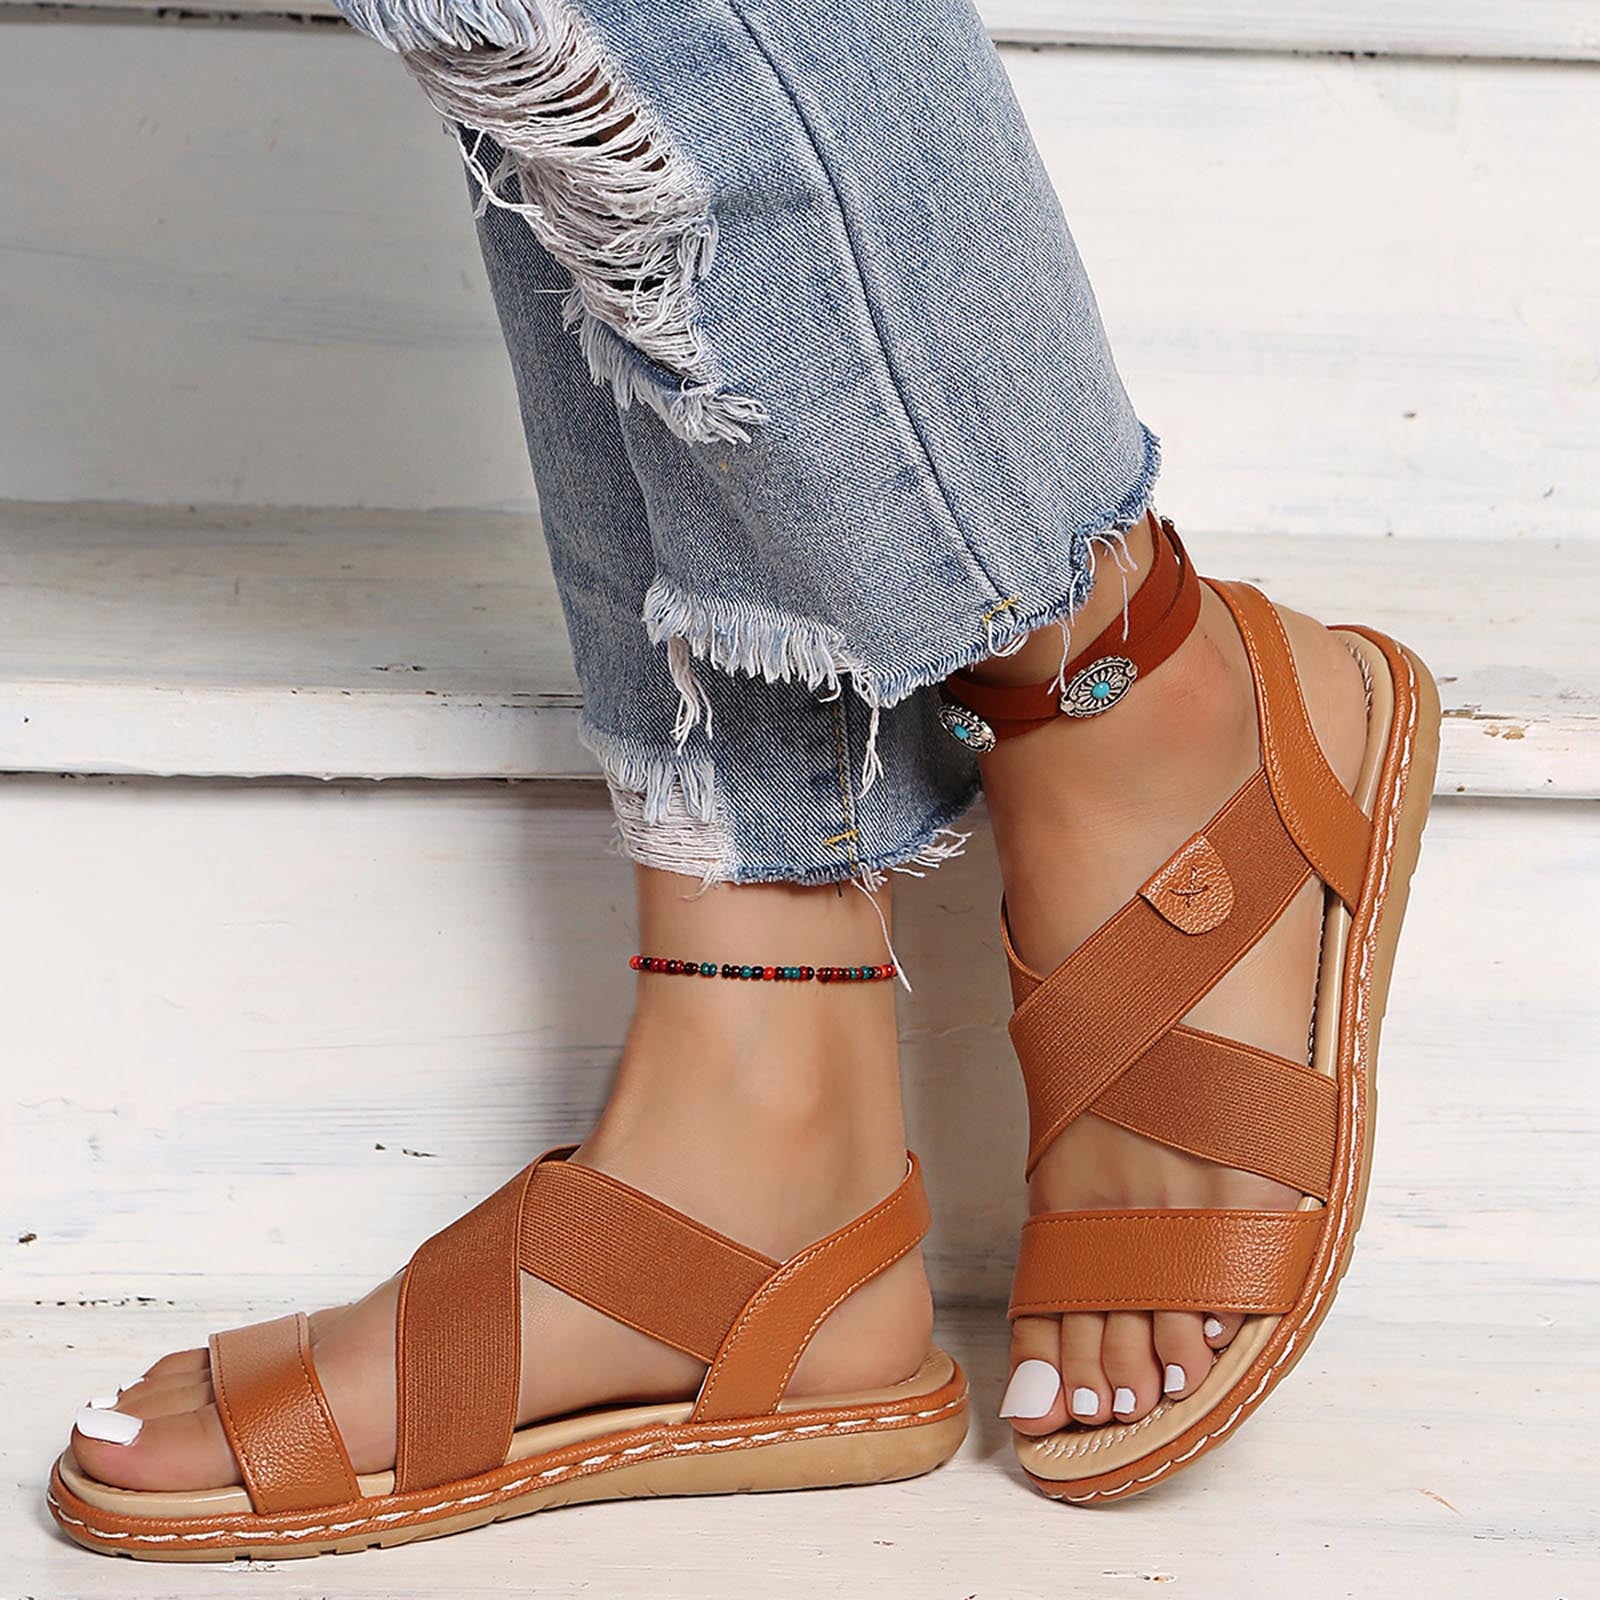 Hvyes Flat Elastic Sandals for Women Dressy, Comfort Slip-on Elastic ...